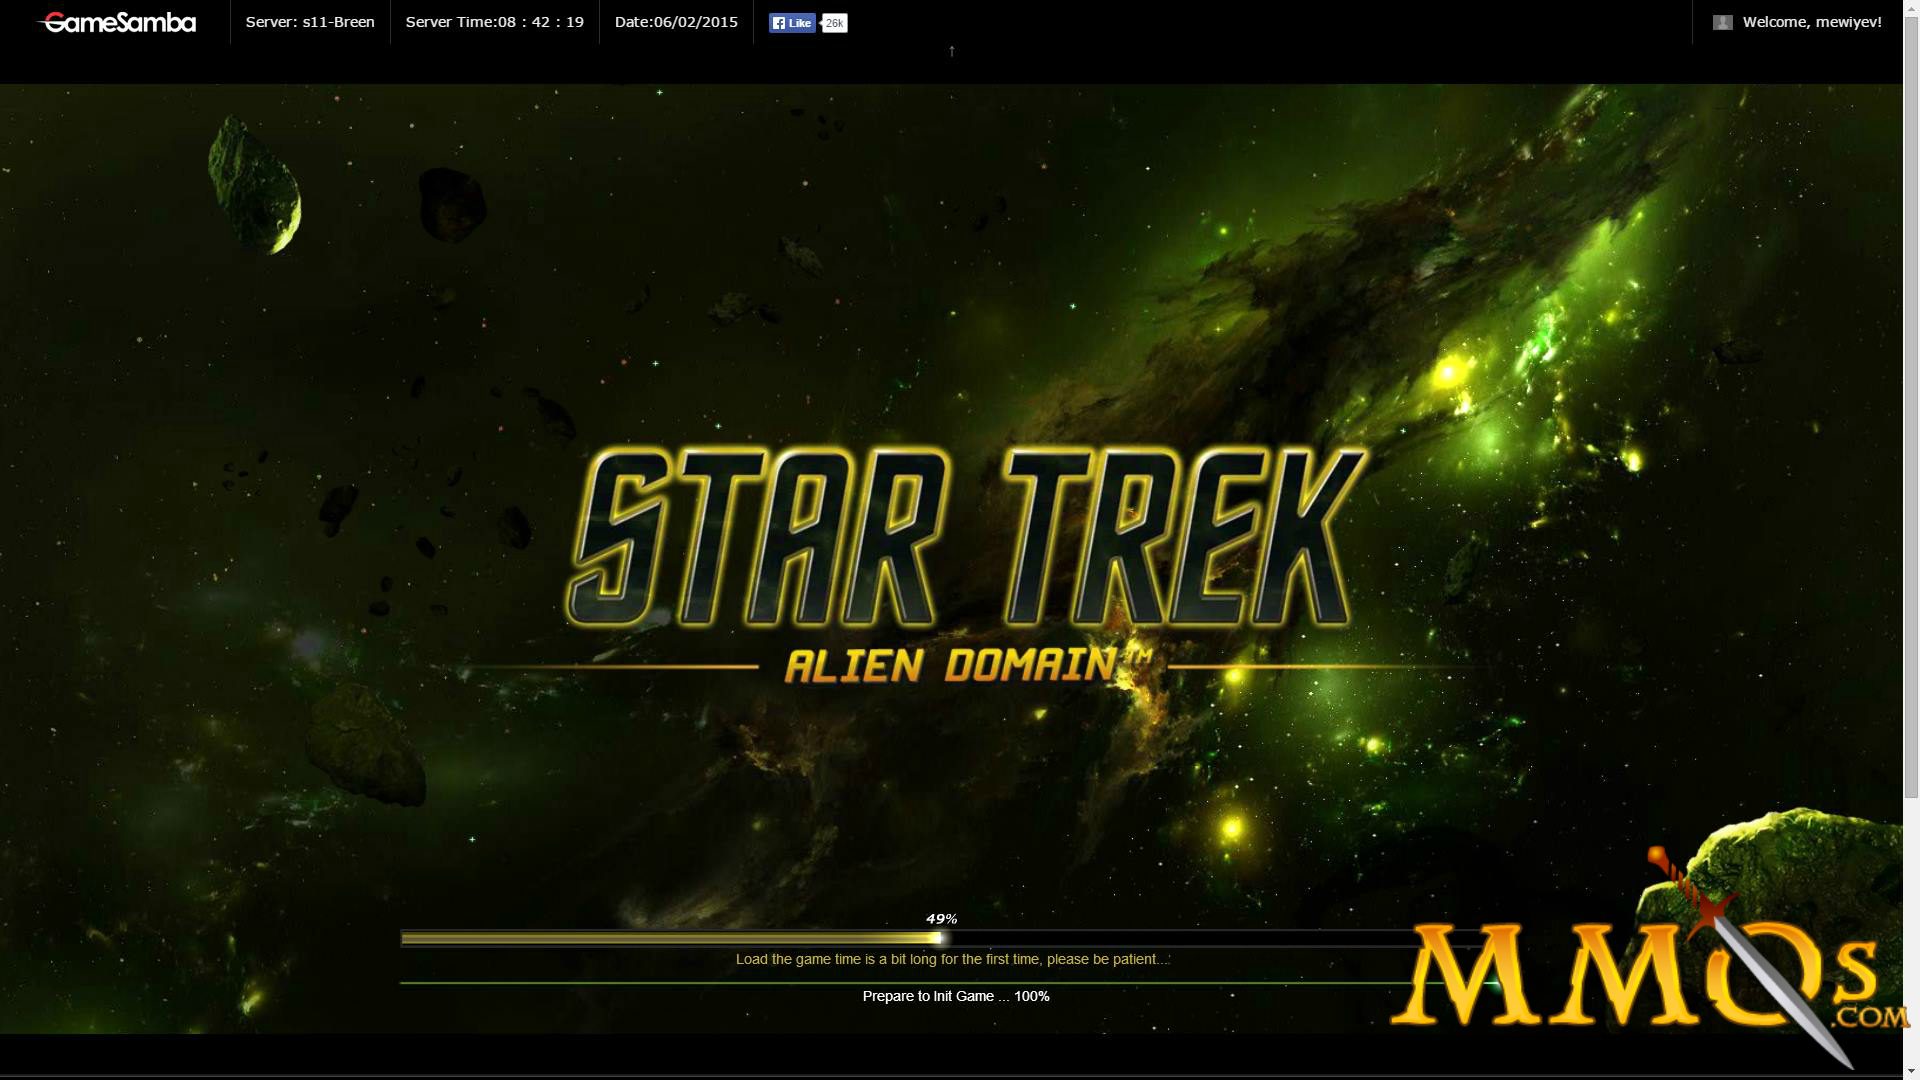 Play Anime Games Online - Star Trek Alien Domain, HISTORICA, RAN